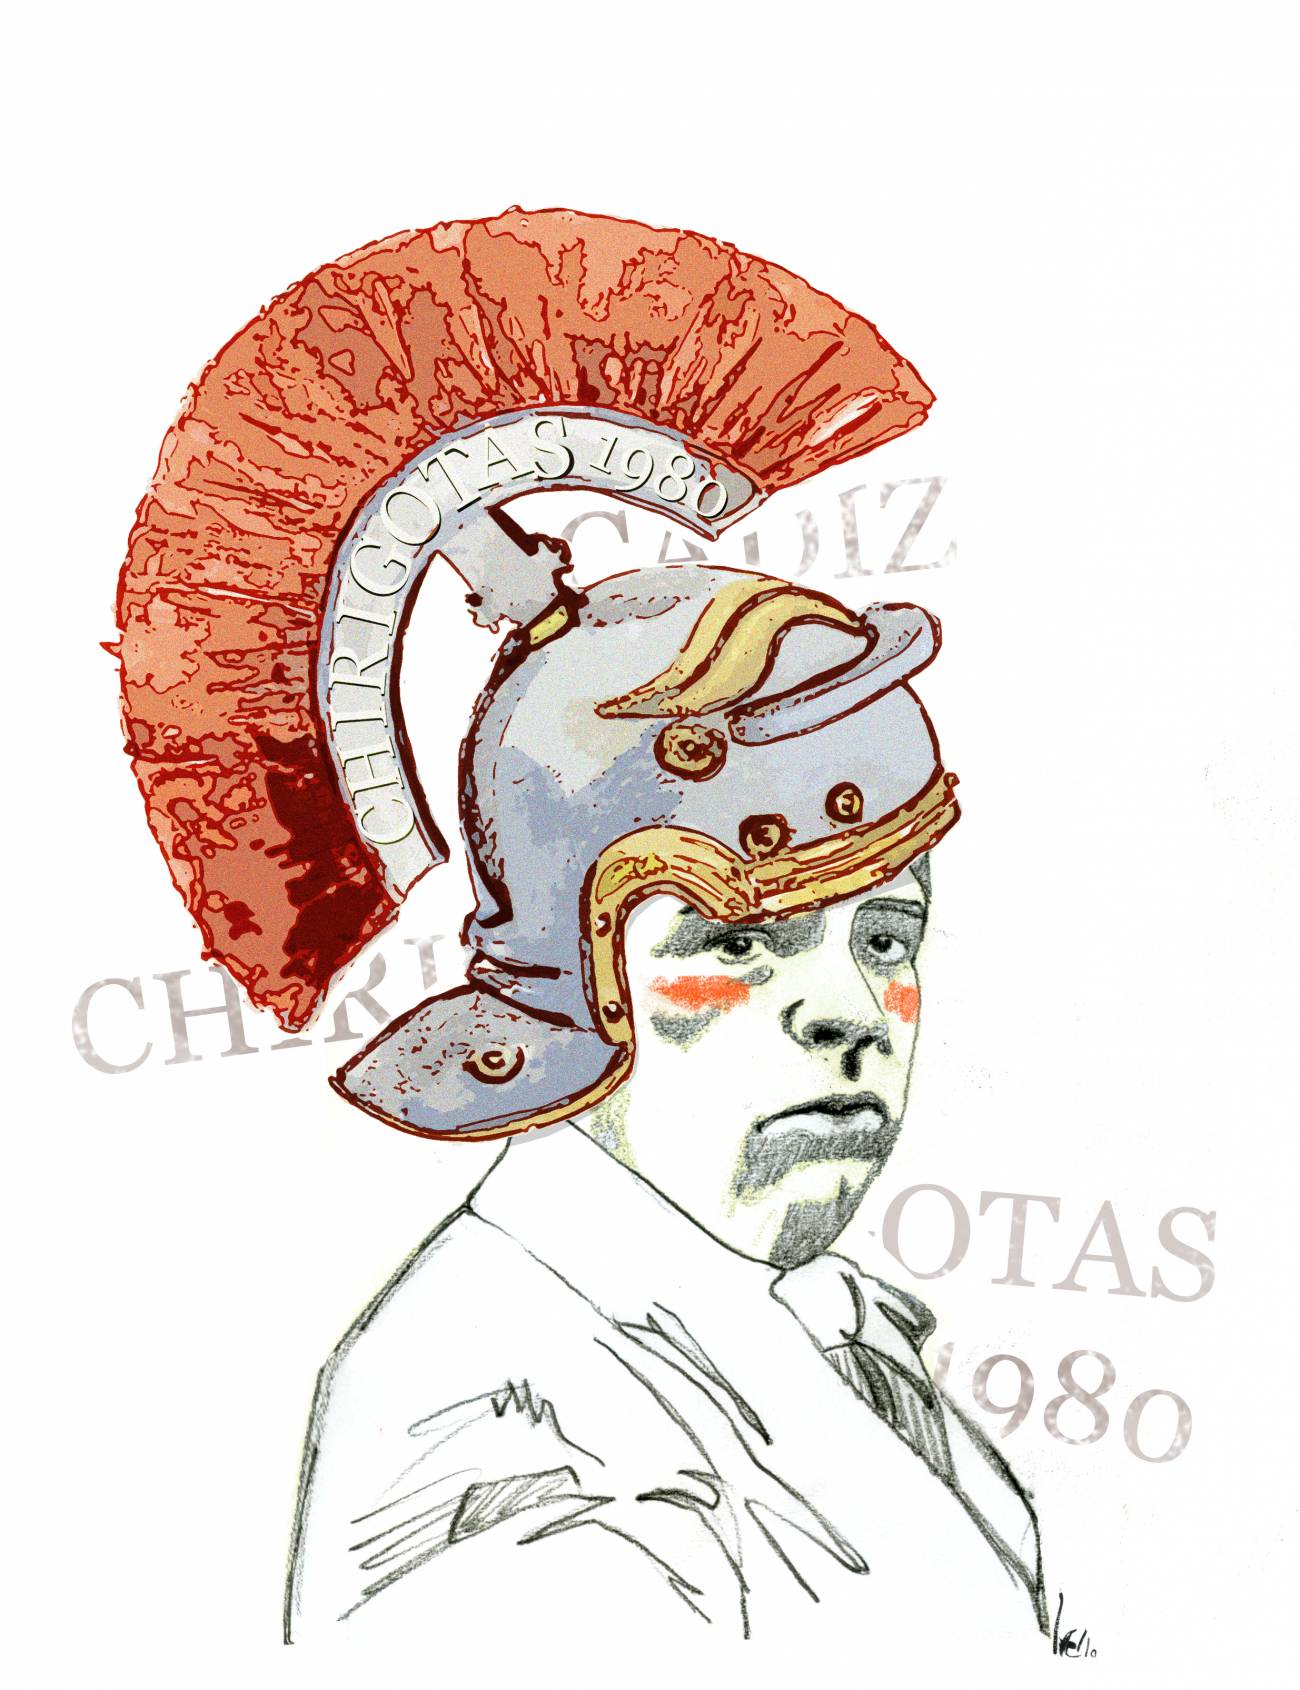 25 de octubre de 1980: Se descubre en Cádiz el circo romano más antiguo de España